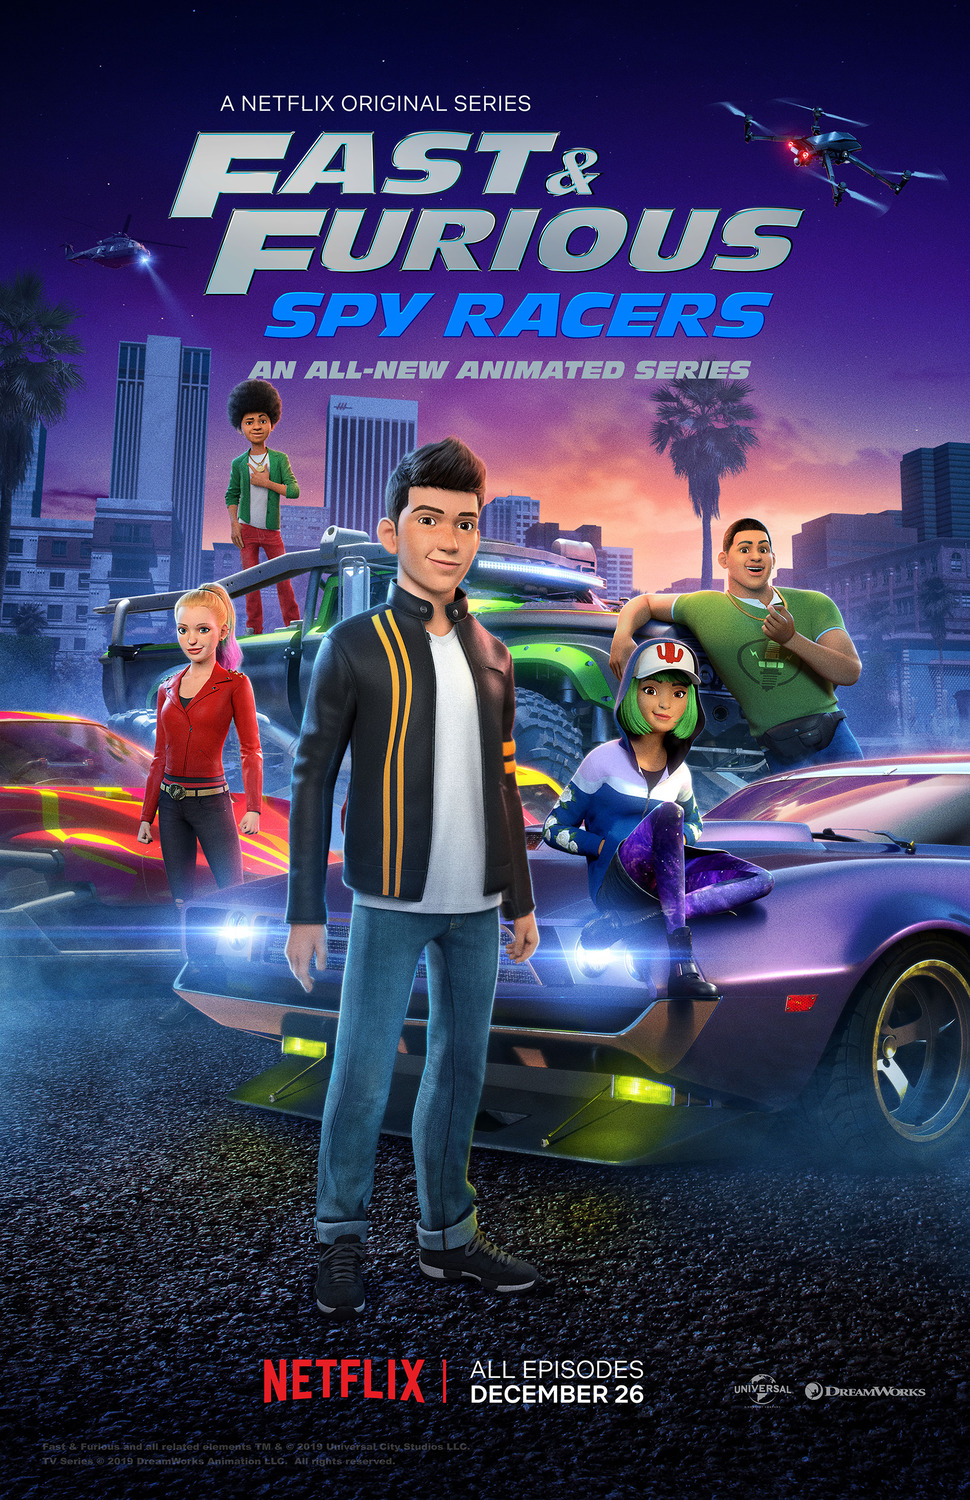 ดูหนังออนไลน์ฟรี Fast & Furious Spy Racers Season 6 EP.3 เร็วแรงทะลุนรก ซิ่งสยบโลก ซีซั่น 6 ตอนที่ 3